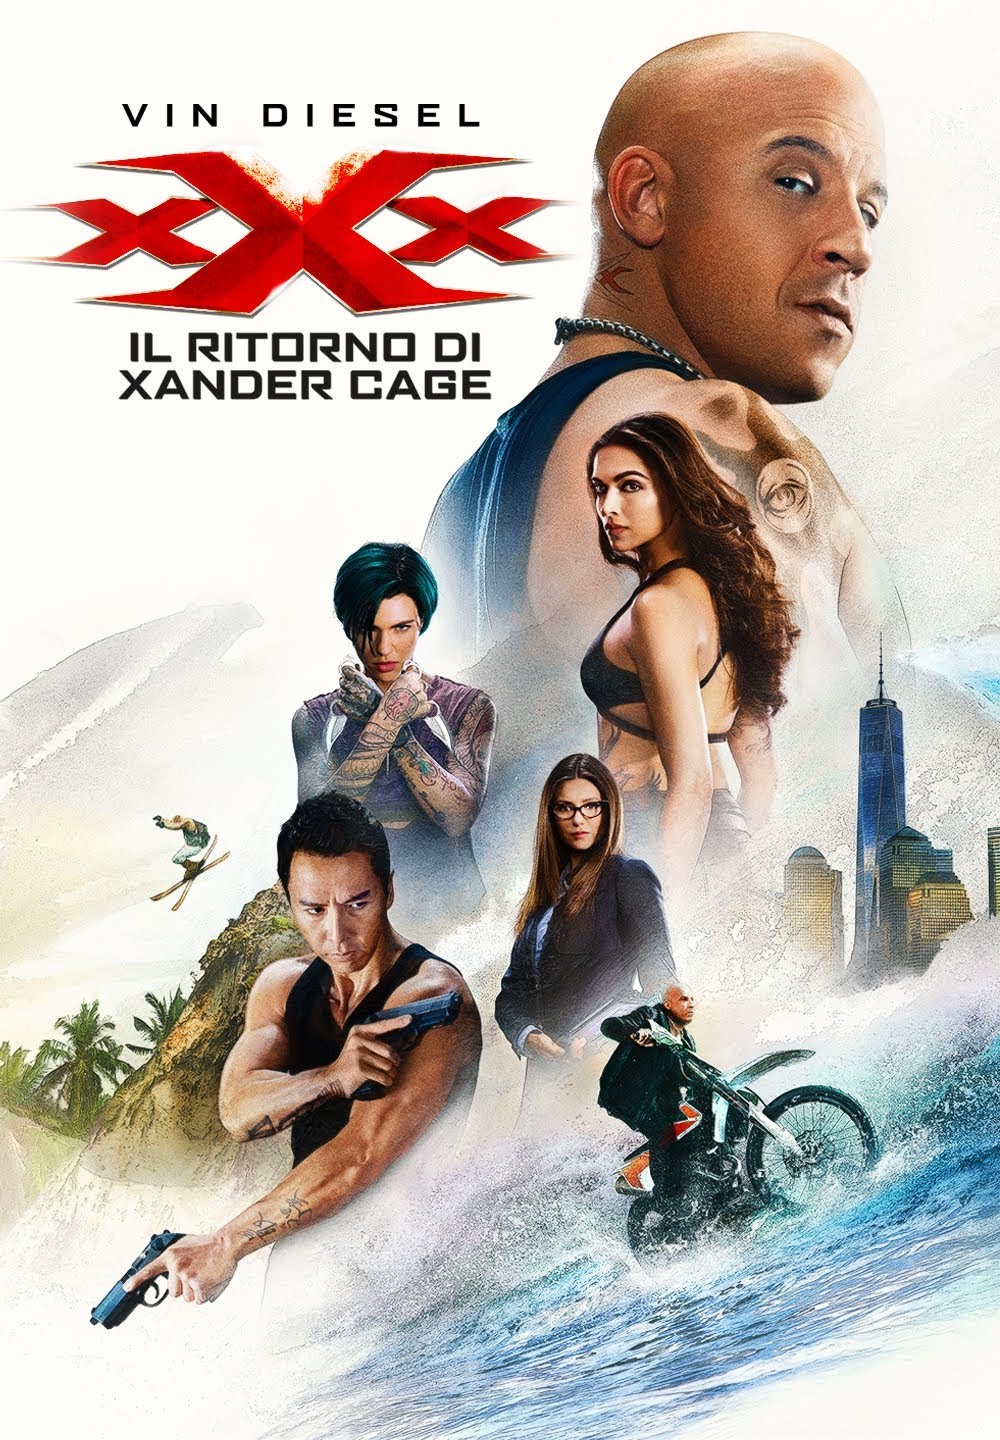 xXx: Il ritorno di Xander Cage [HD] (2017)